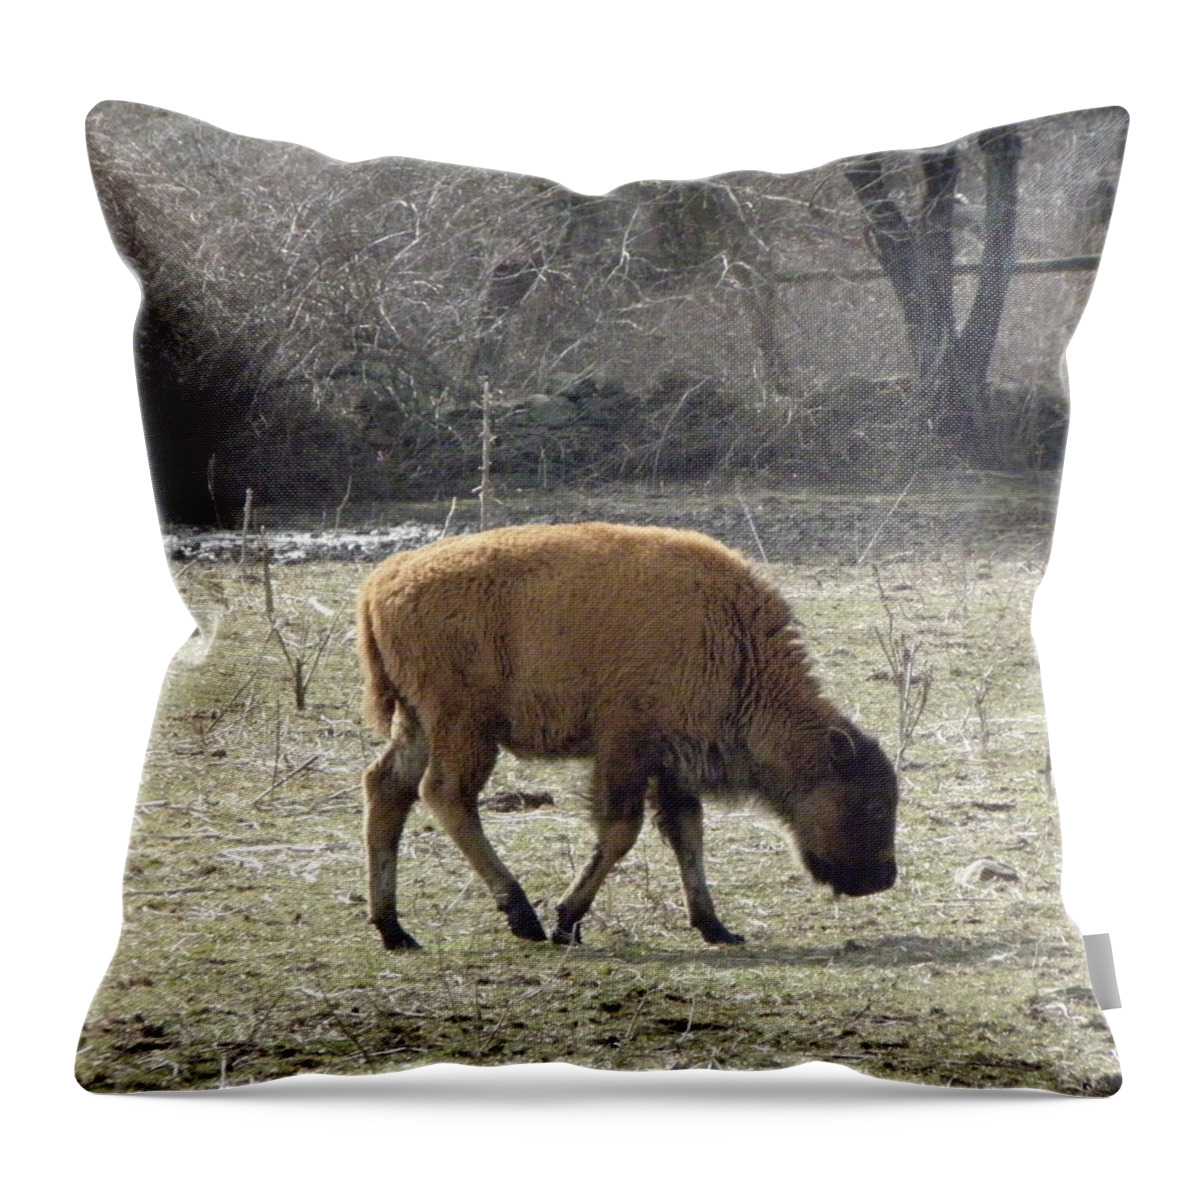 Buffalo Throw Pillow featuring the photograph Baby Buffalo by Kim Galluzzo